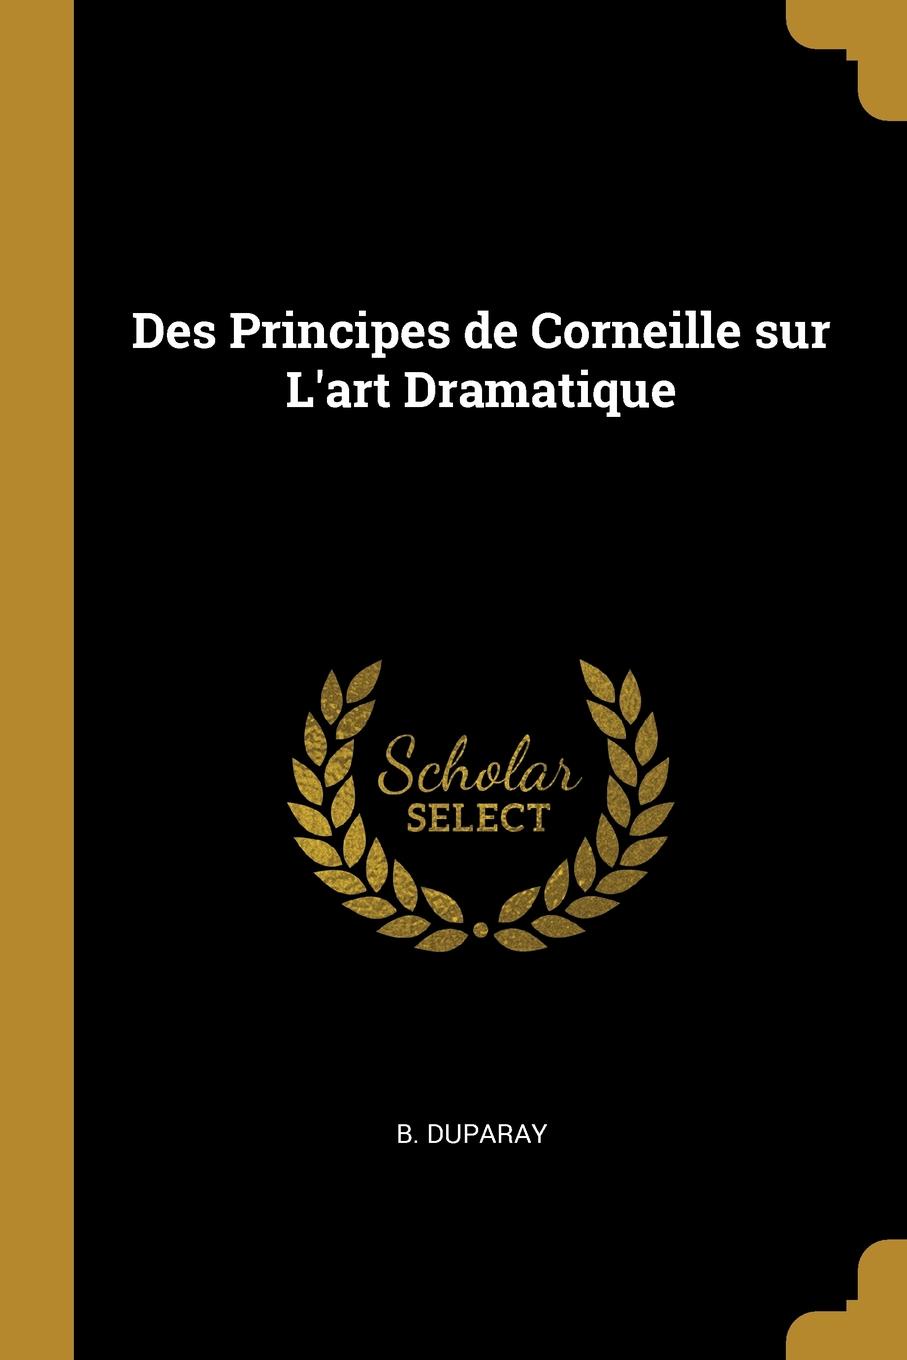 Des Principes de Corneille sur L.art Dramatique